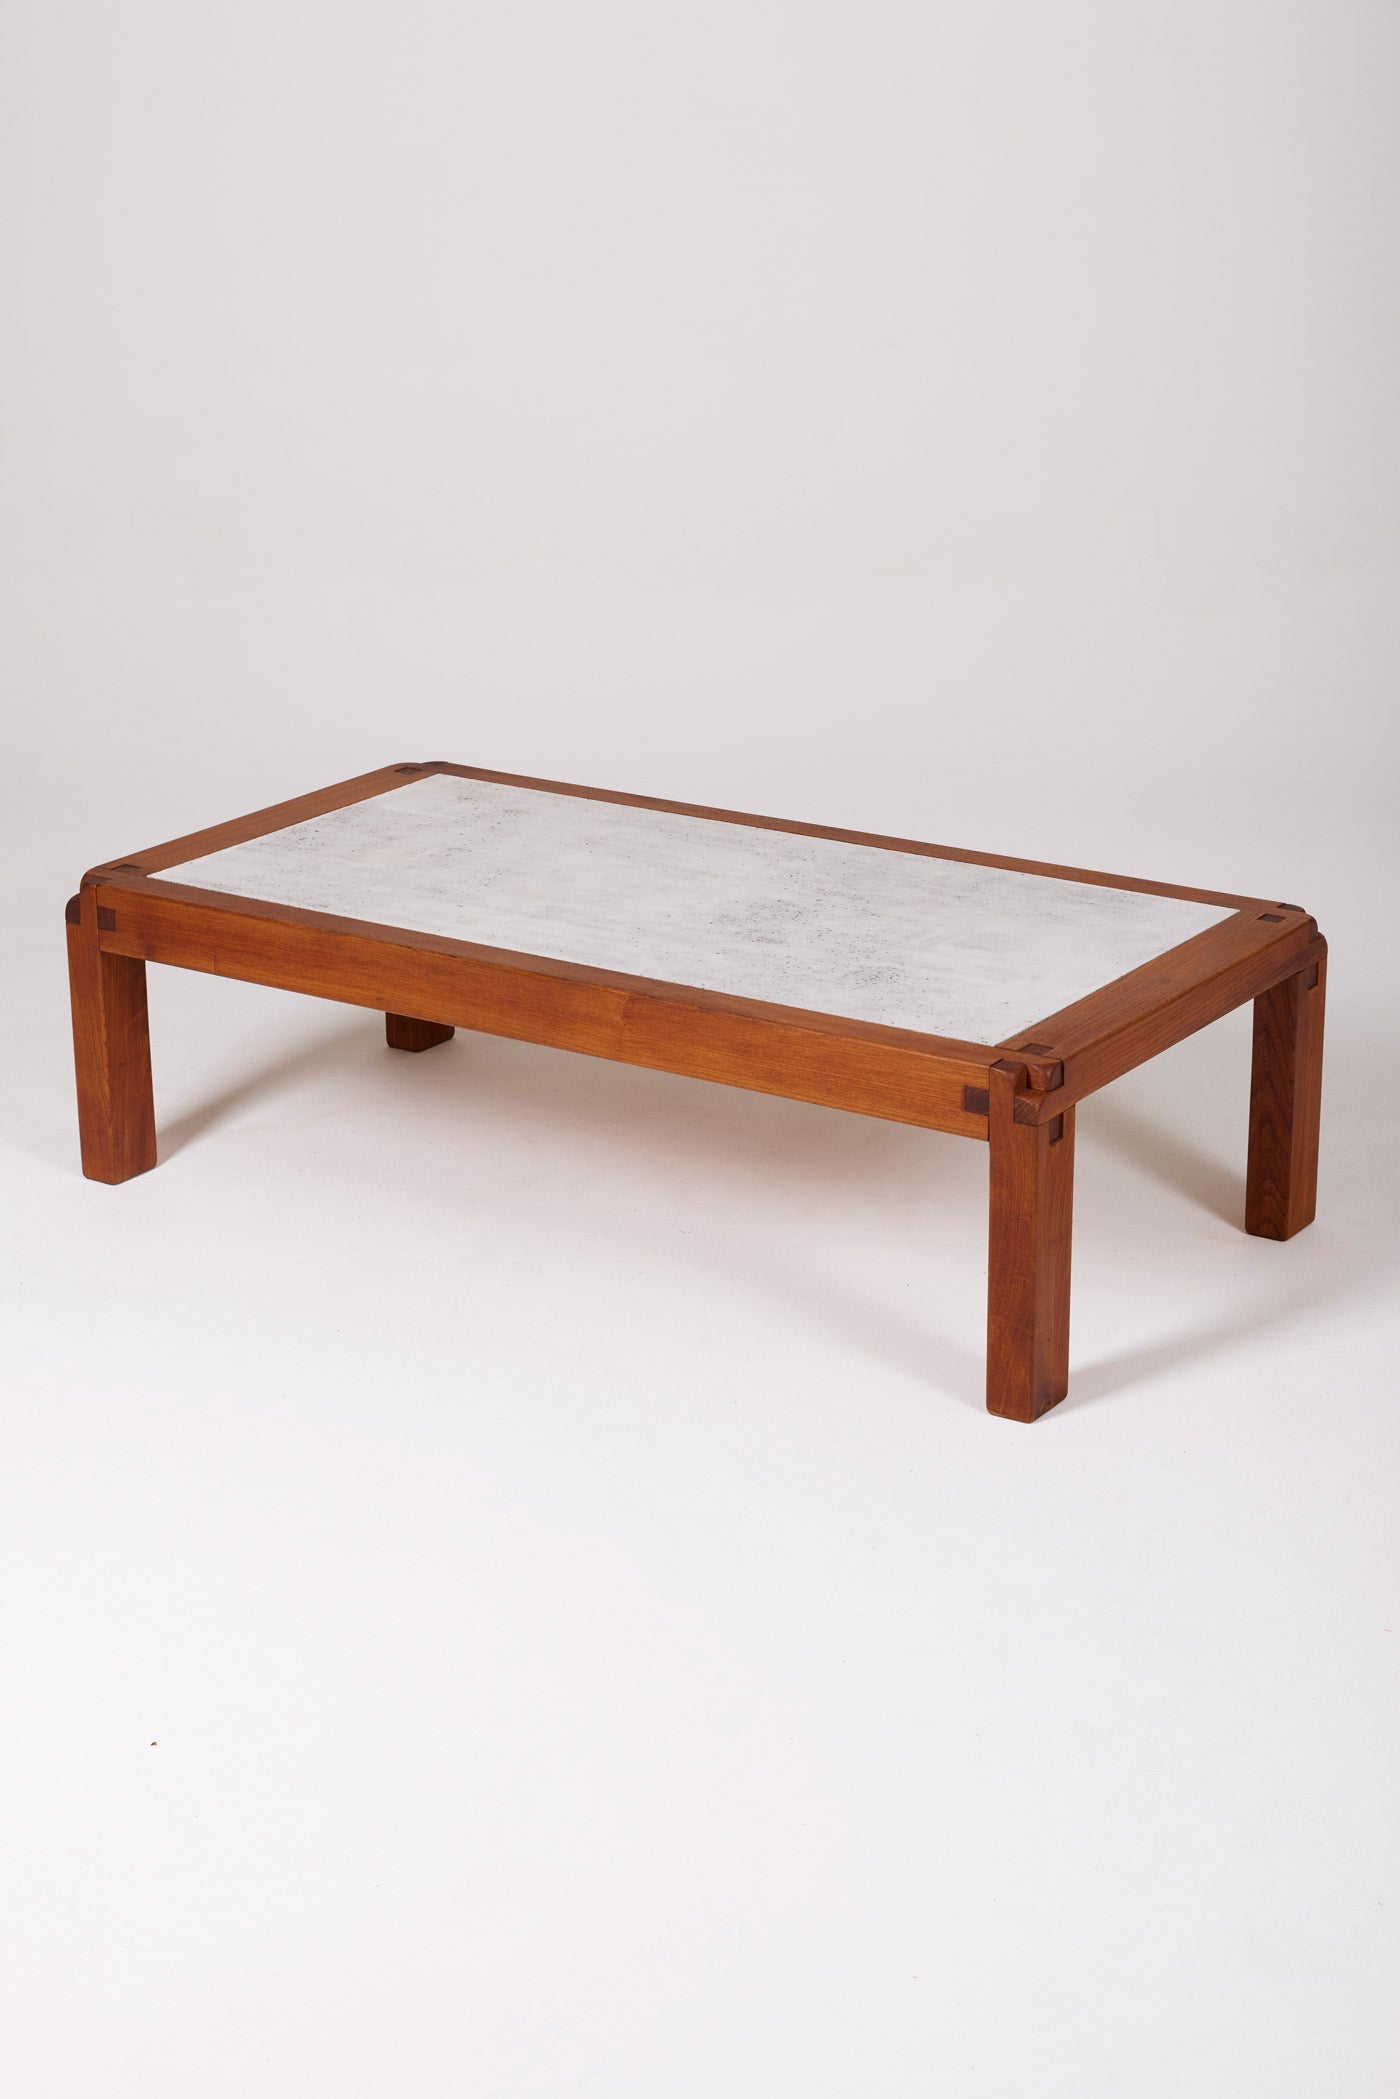 Table basse en orme et lave émaillée modèle T18 du designer Pierre Chapo, années 1960. Parfait état.